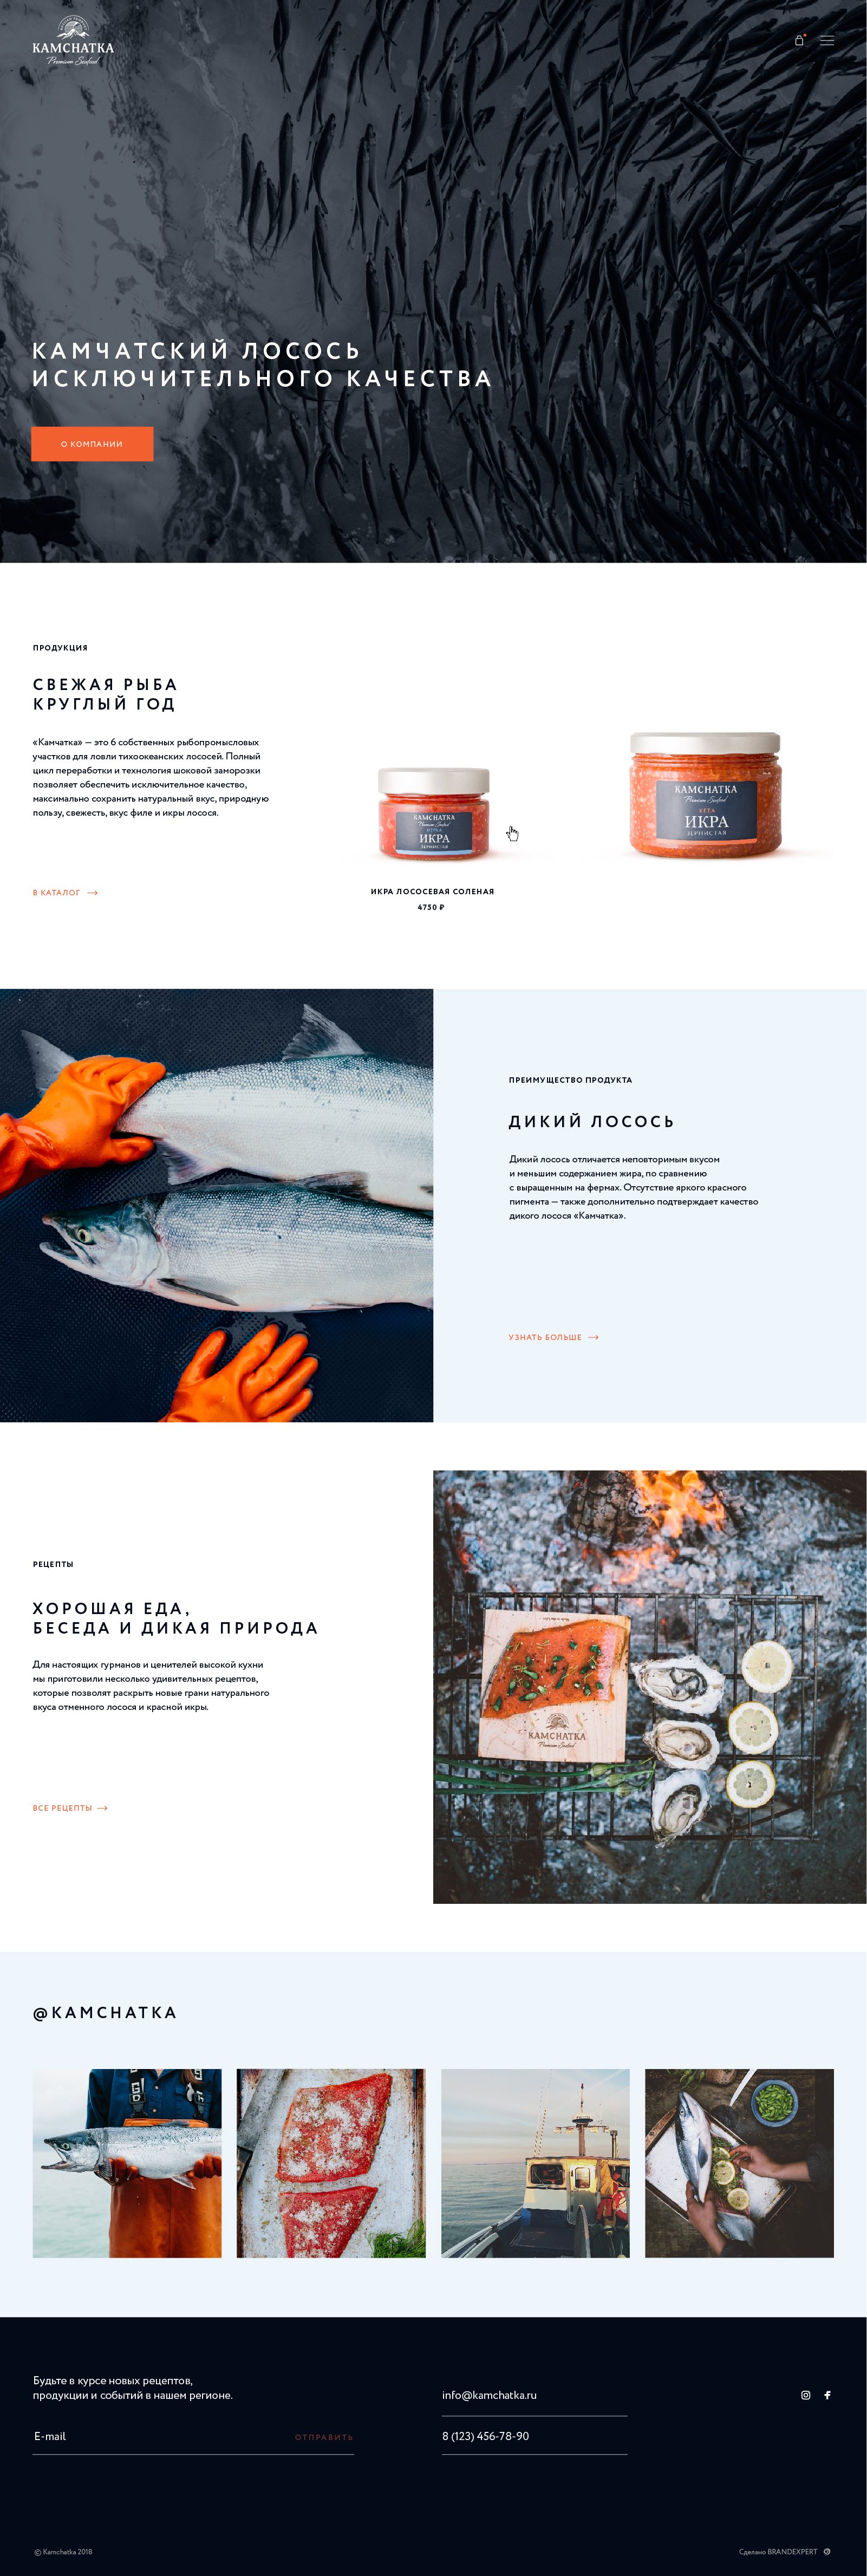 Дизайн сайта морепродуктов Камчатка